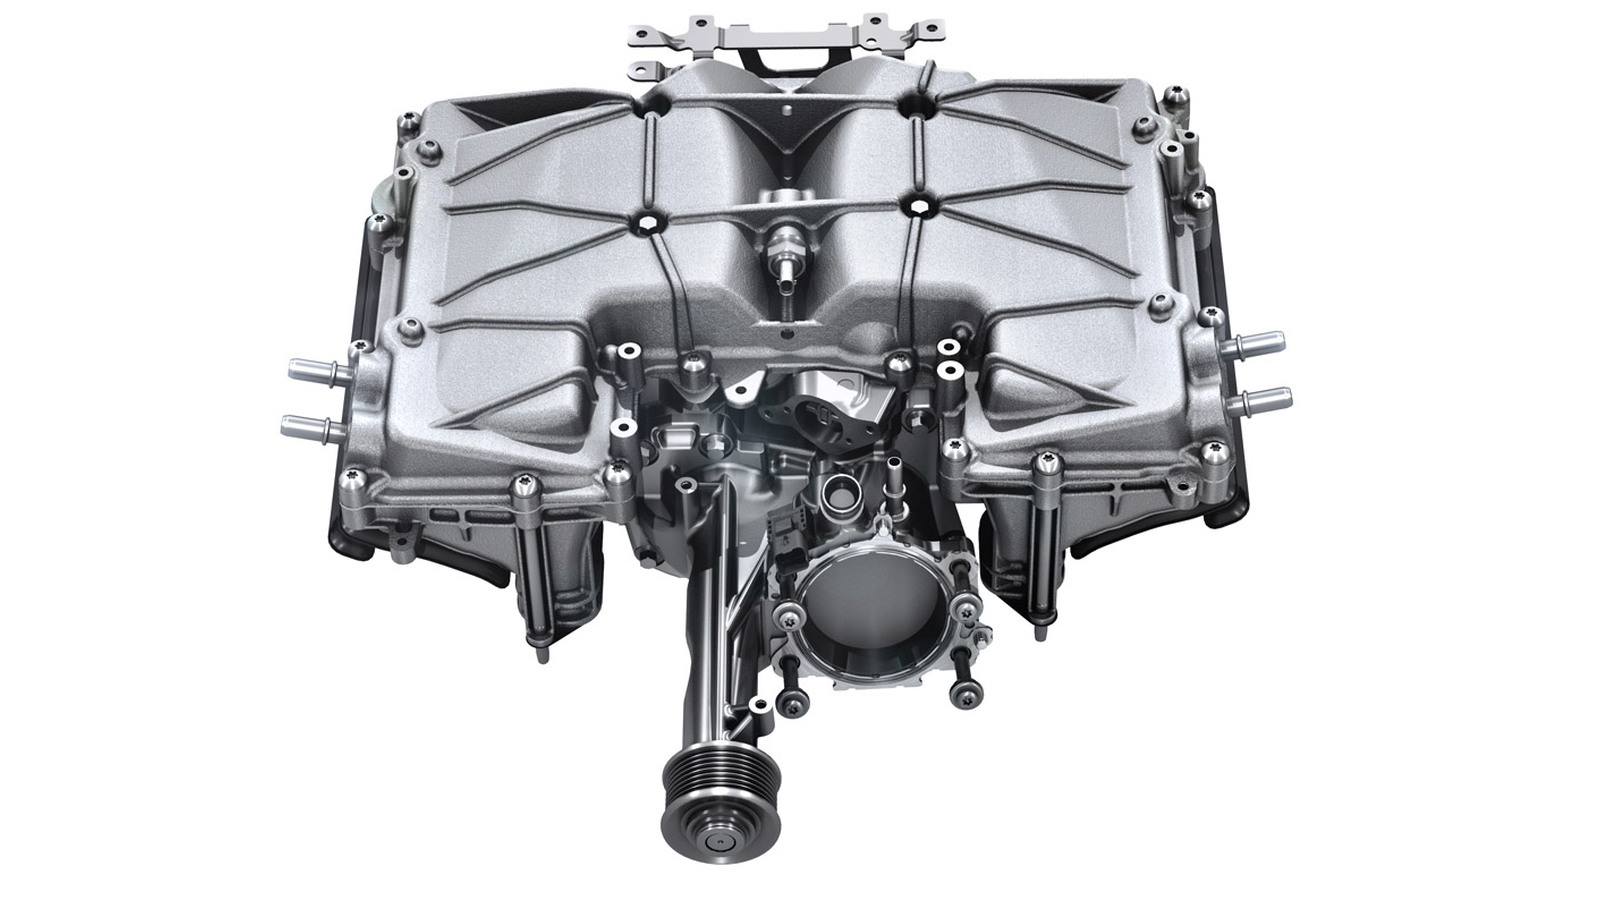 Supercharger from Jaguar 3.0-liter V-6 engine